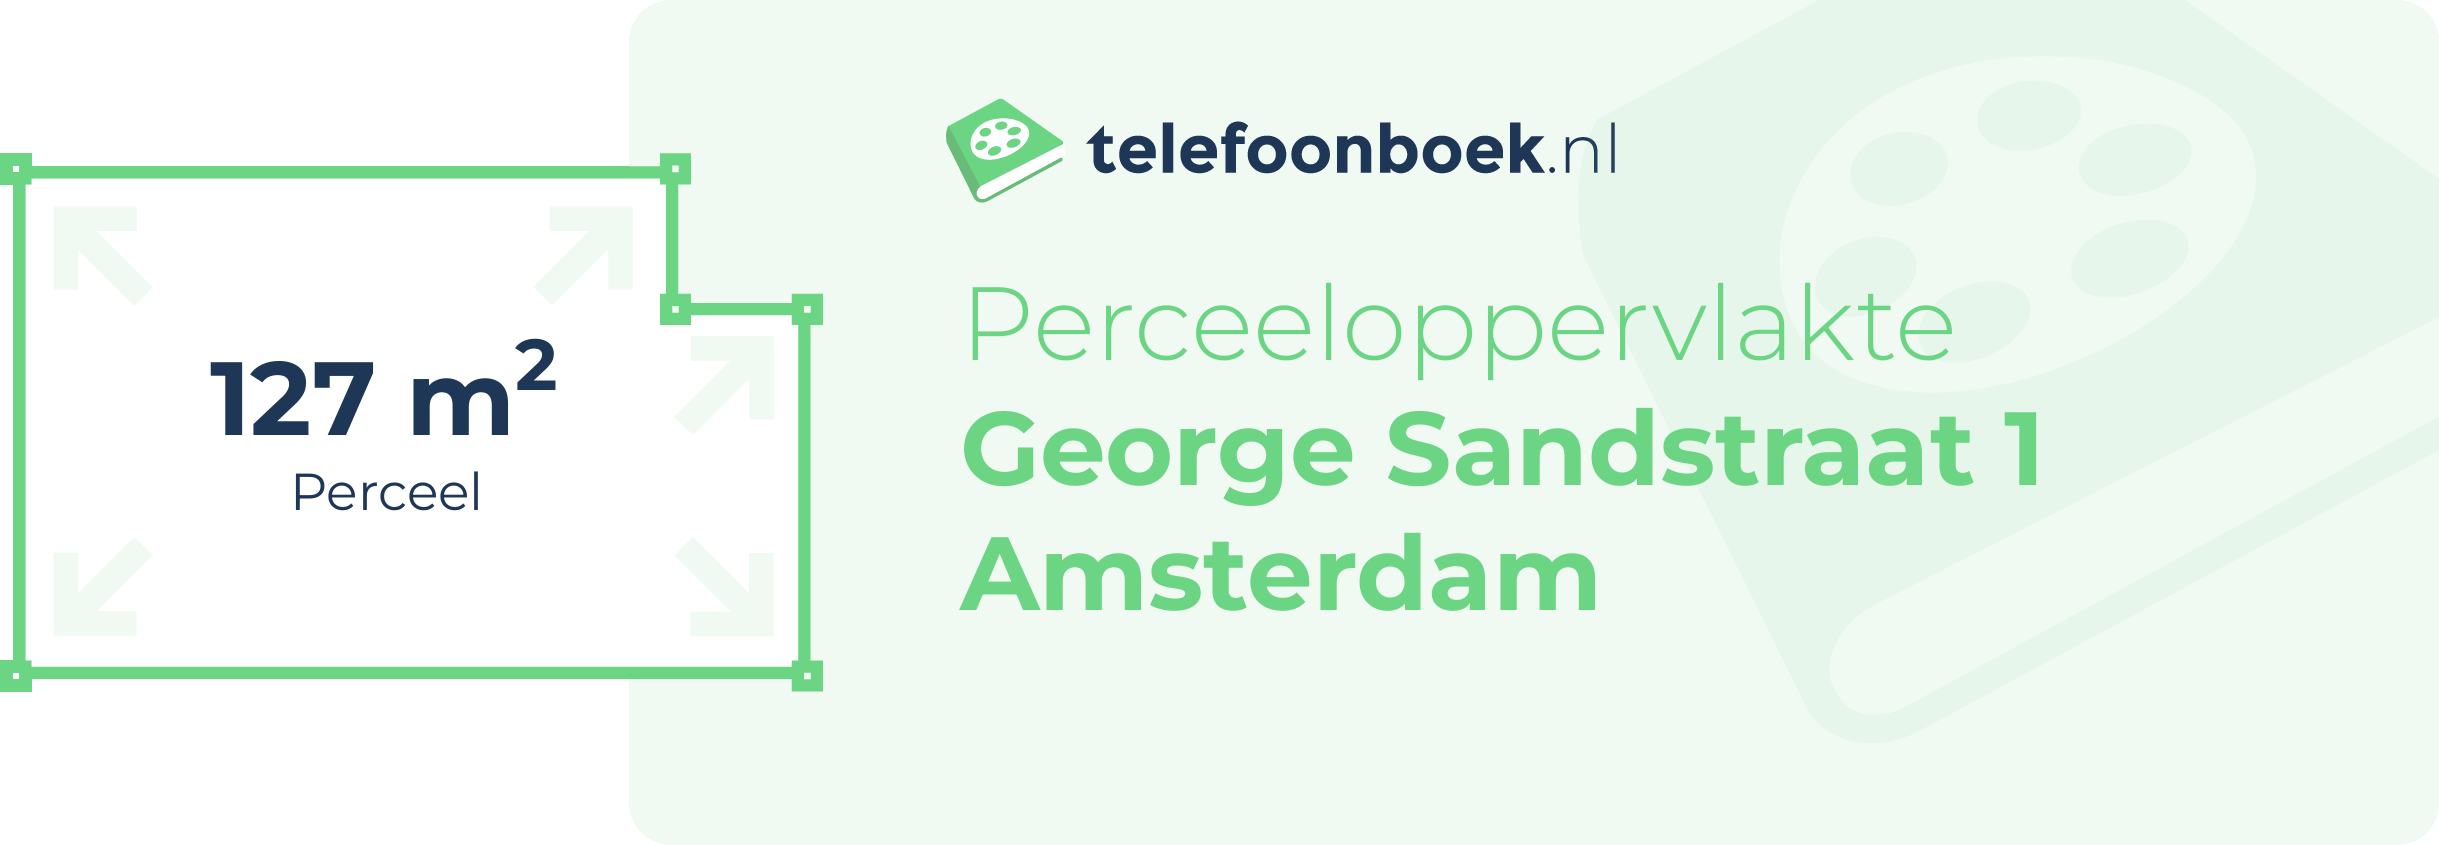 Perceeloppervlakte George Sandstraat 1 Amsterdam